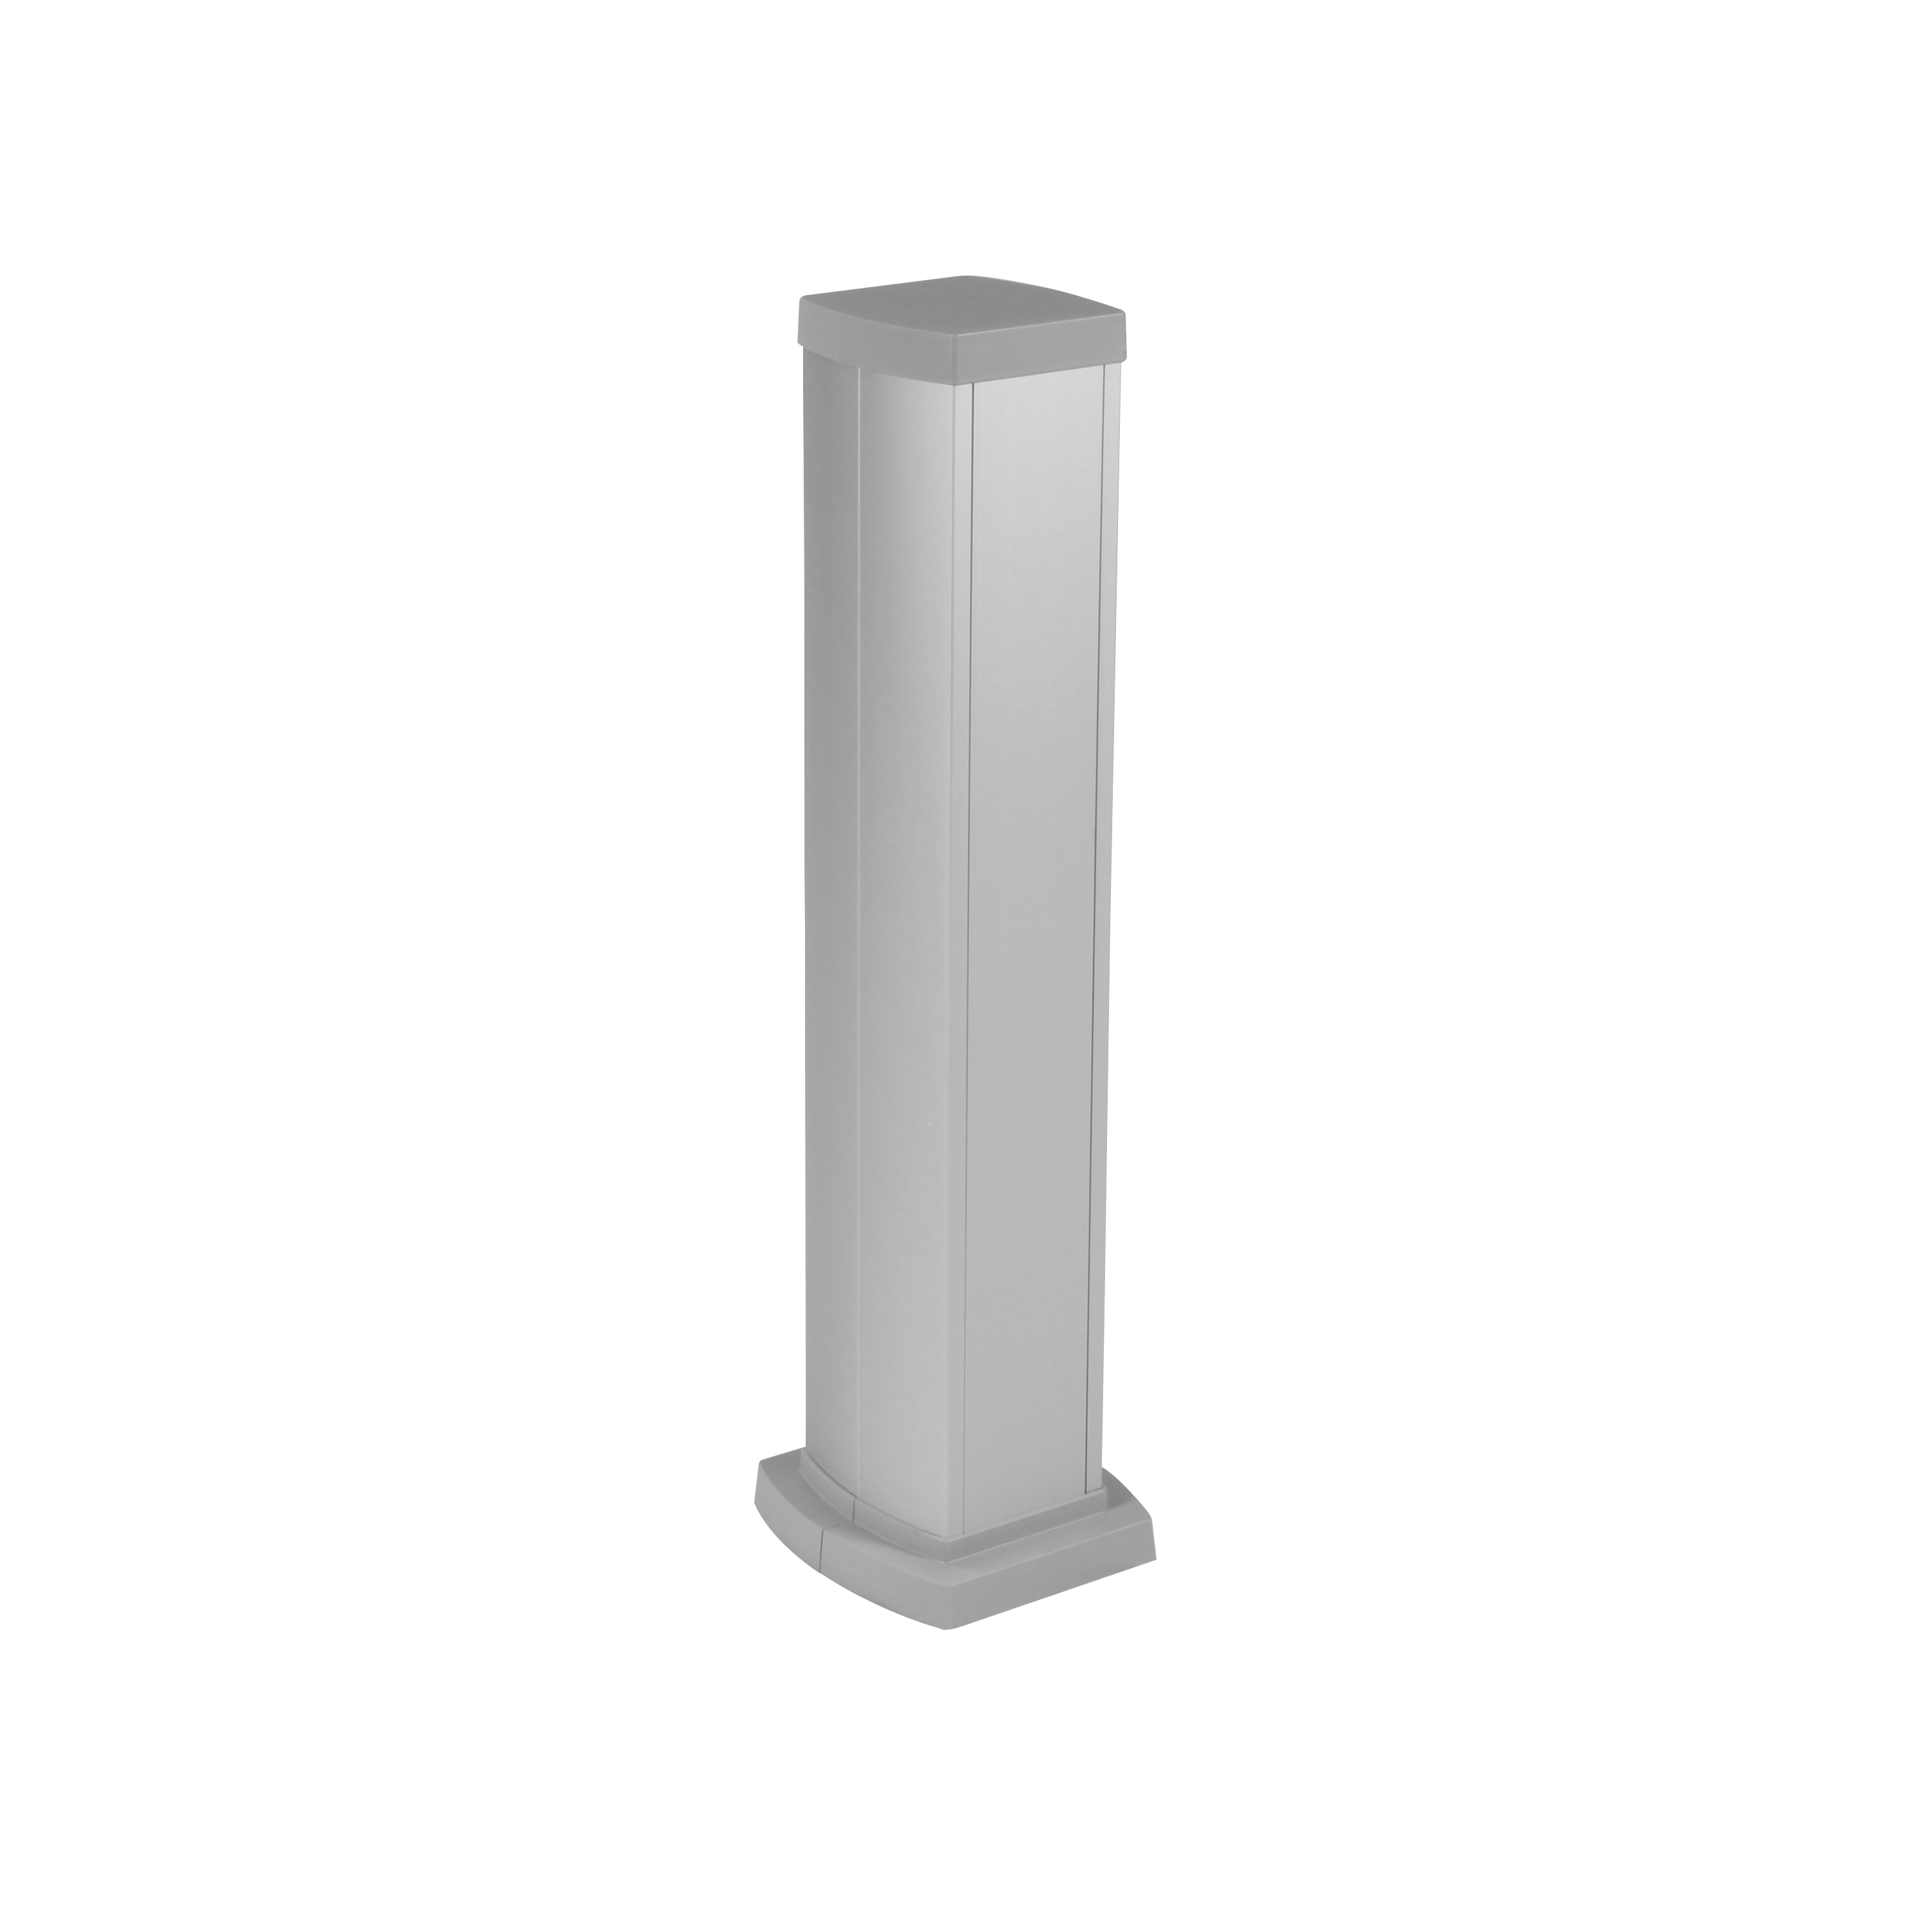 Универсальная мини-колонна алюминиевая с крышкой из алюминия 2 секции, высота 0,68 метра, цвет алюминий 653124 Legrand